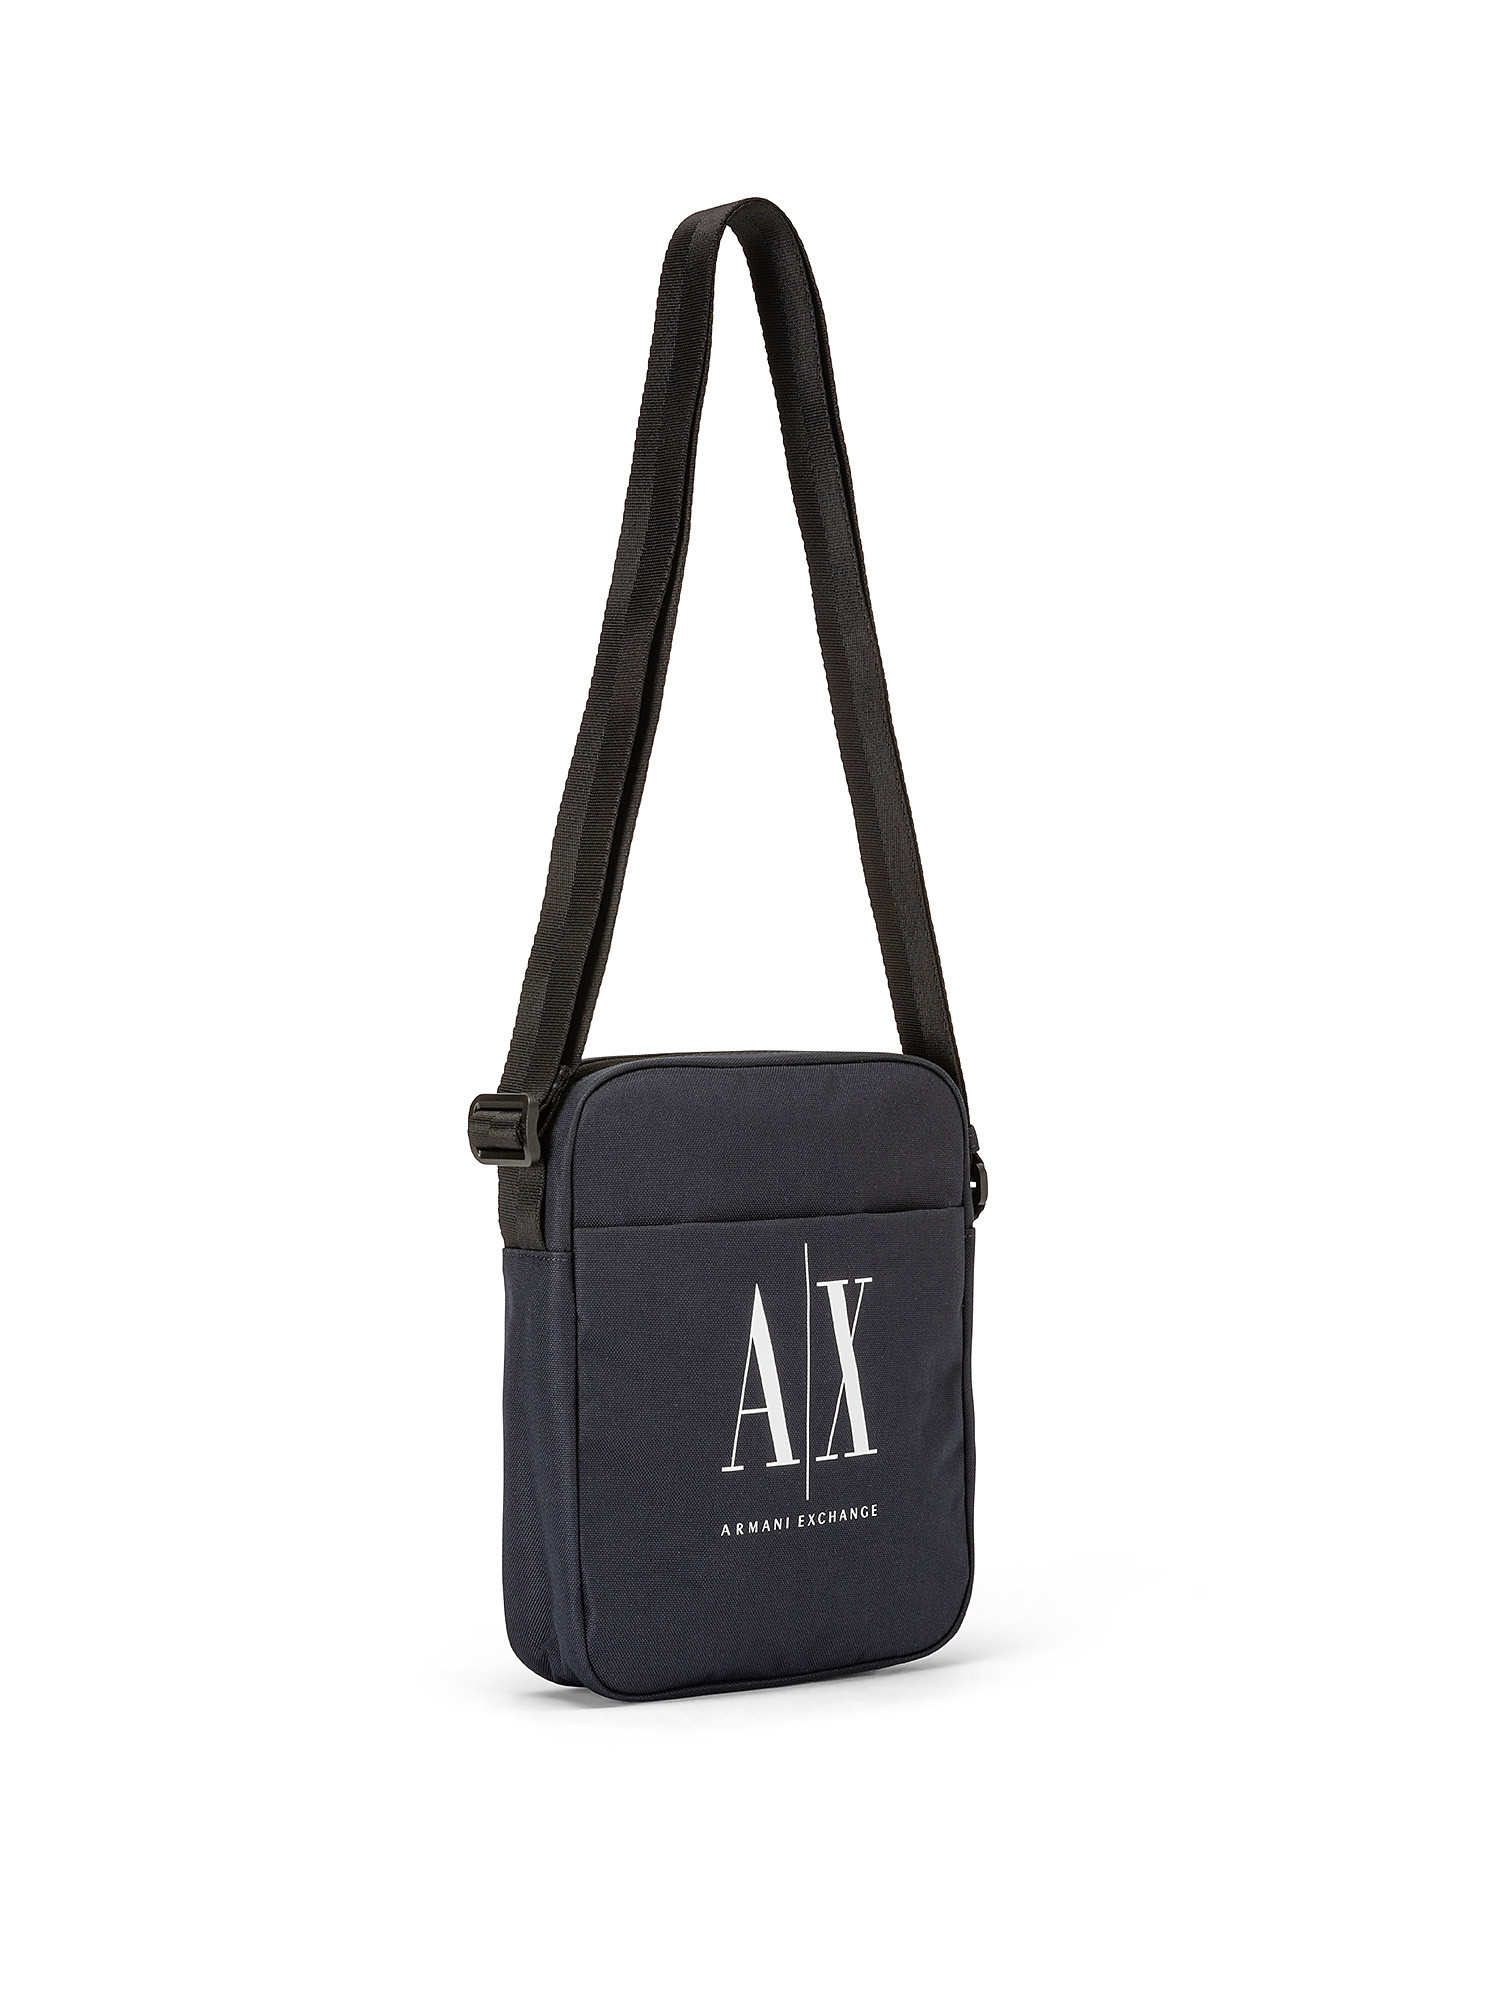 Armani Exchange - Nylon shoulder bag with contrasting logo, Dark Blue, large image number 1